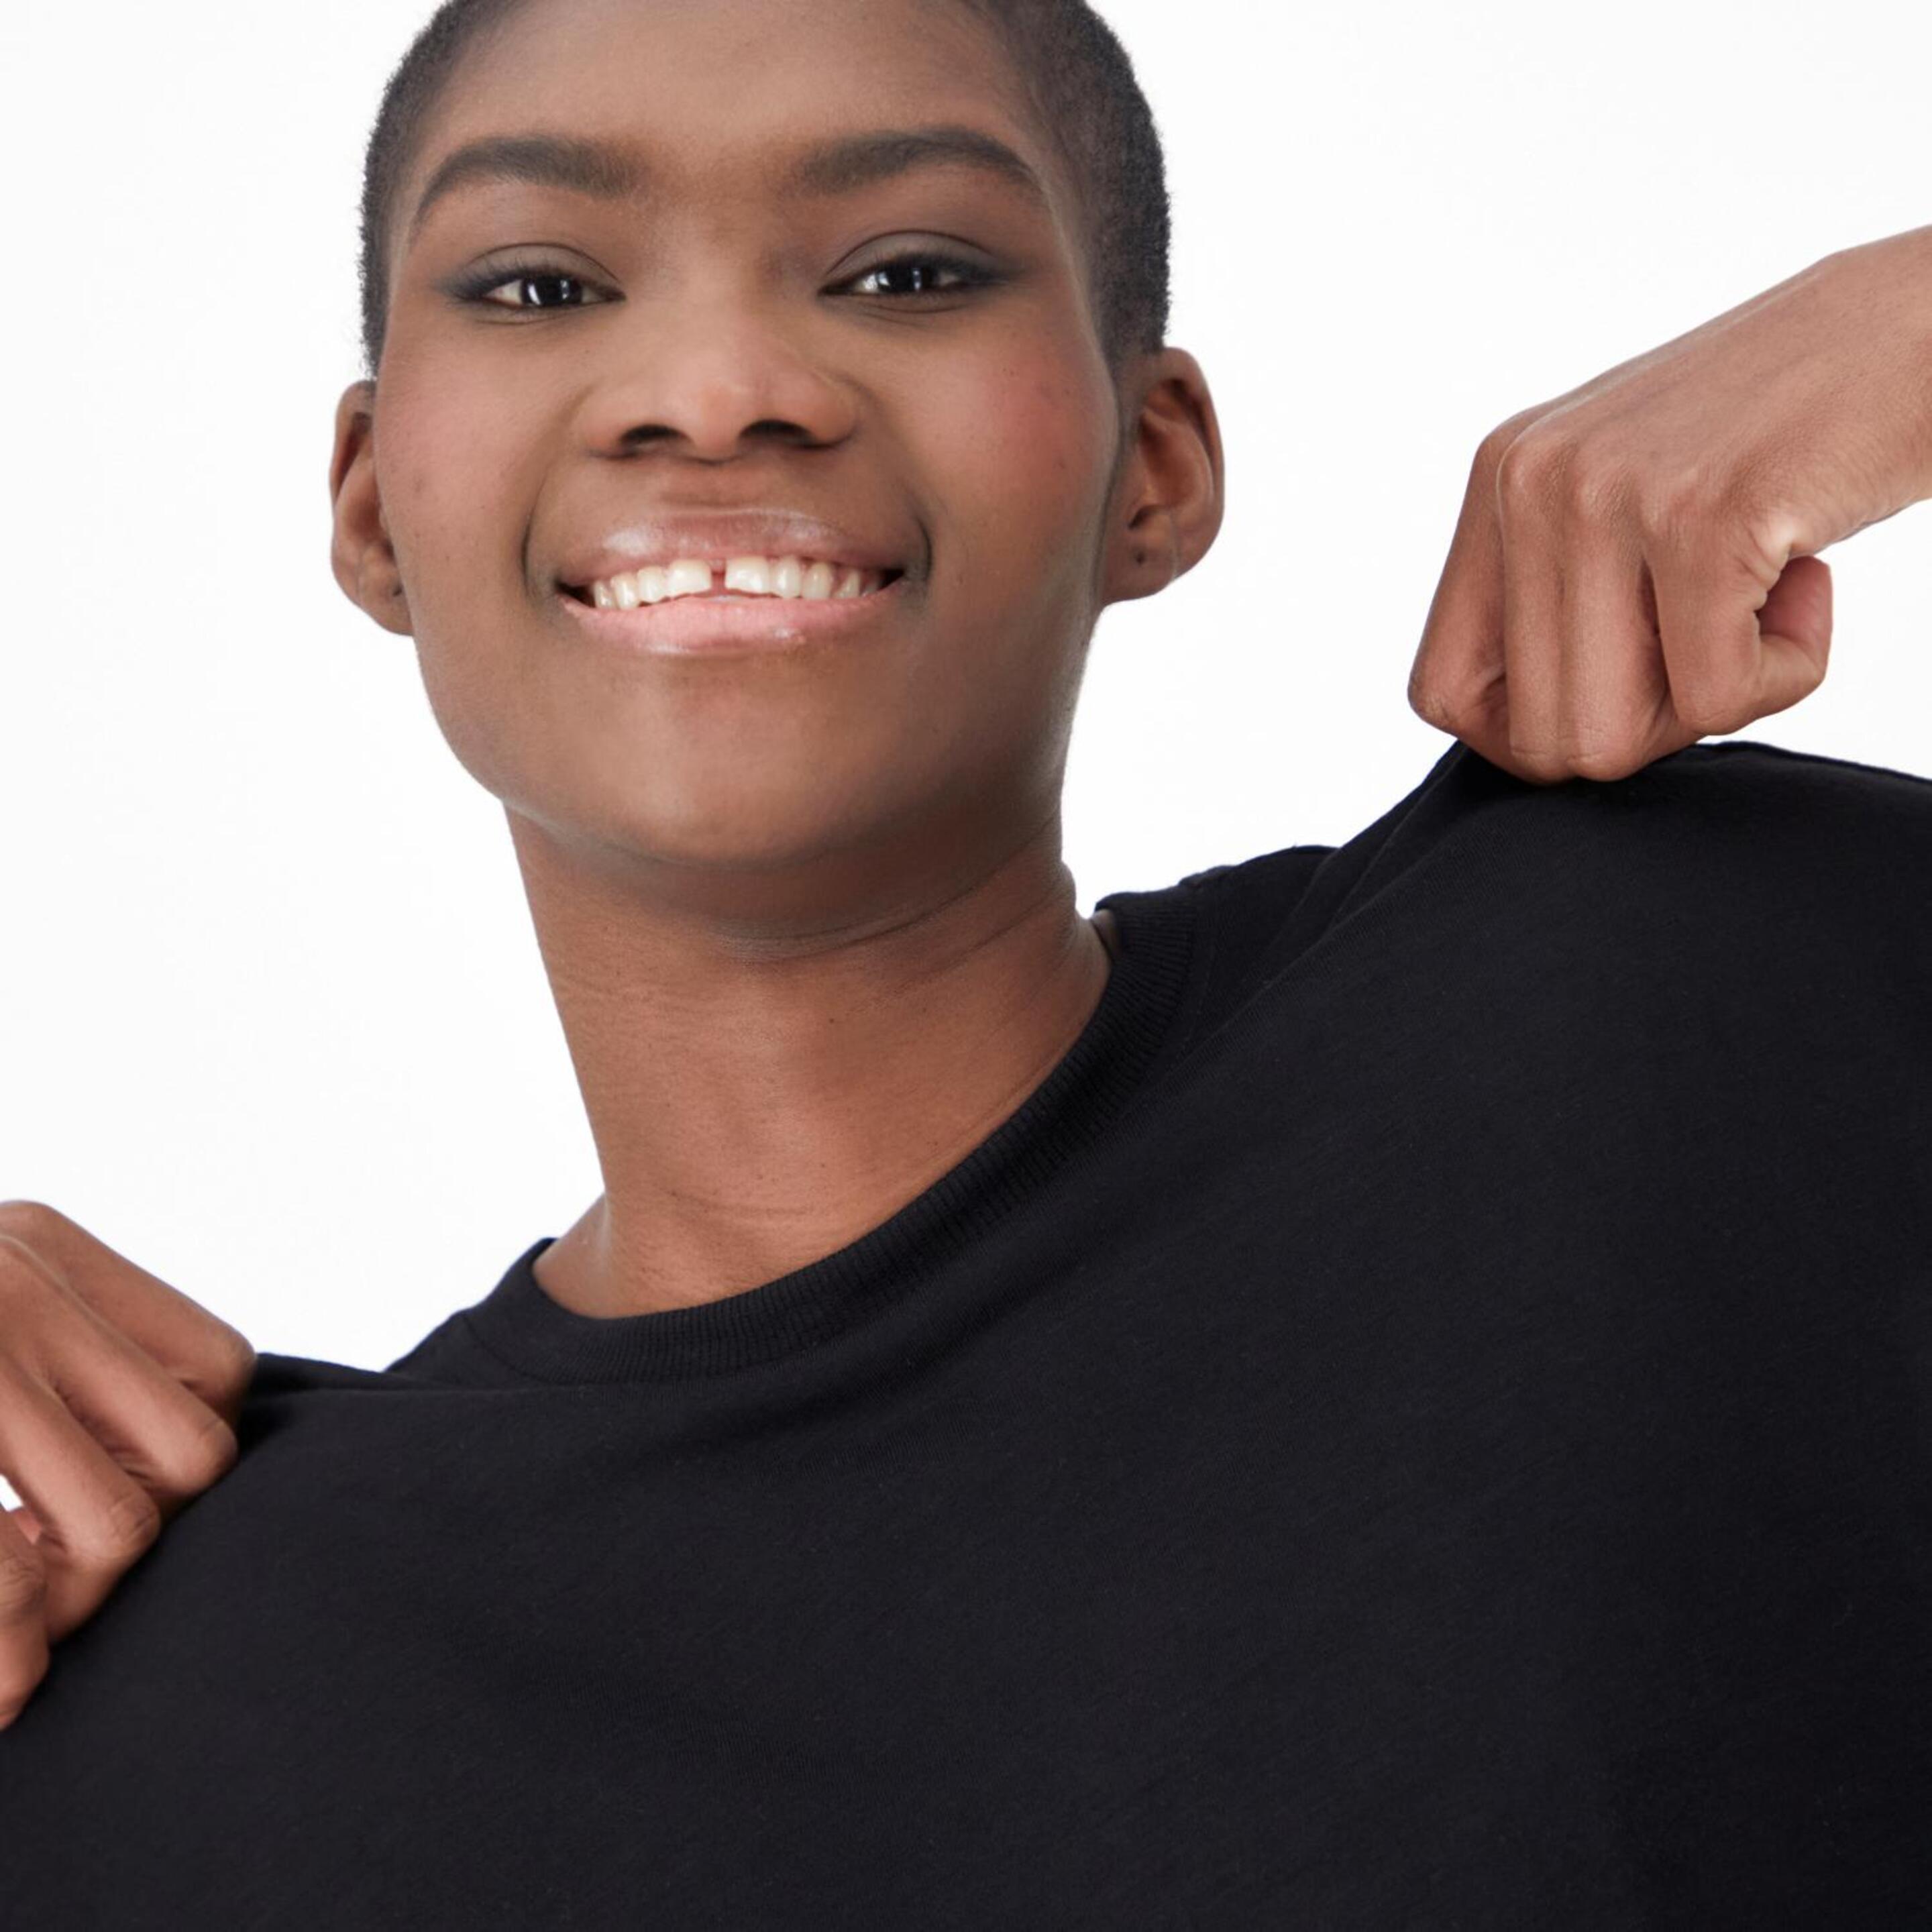 Up Basic - Negro - Camiseta Oversize Mujer